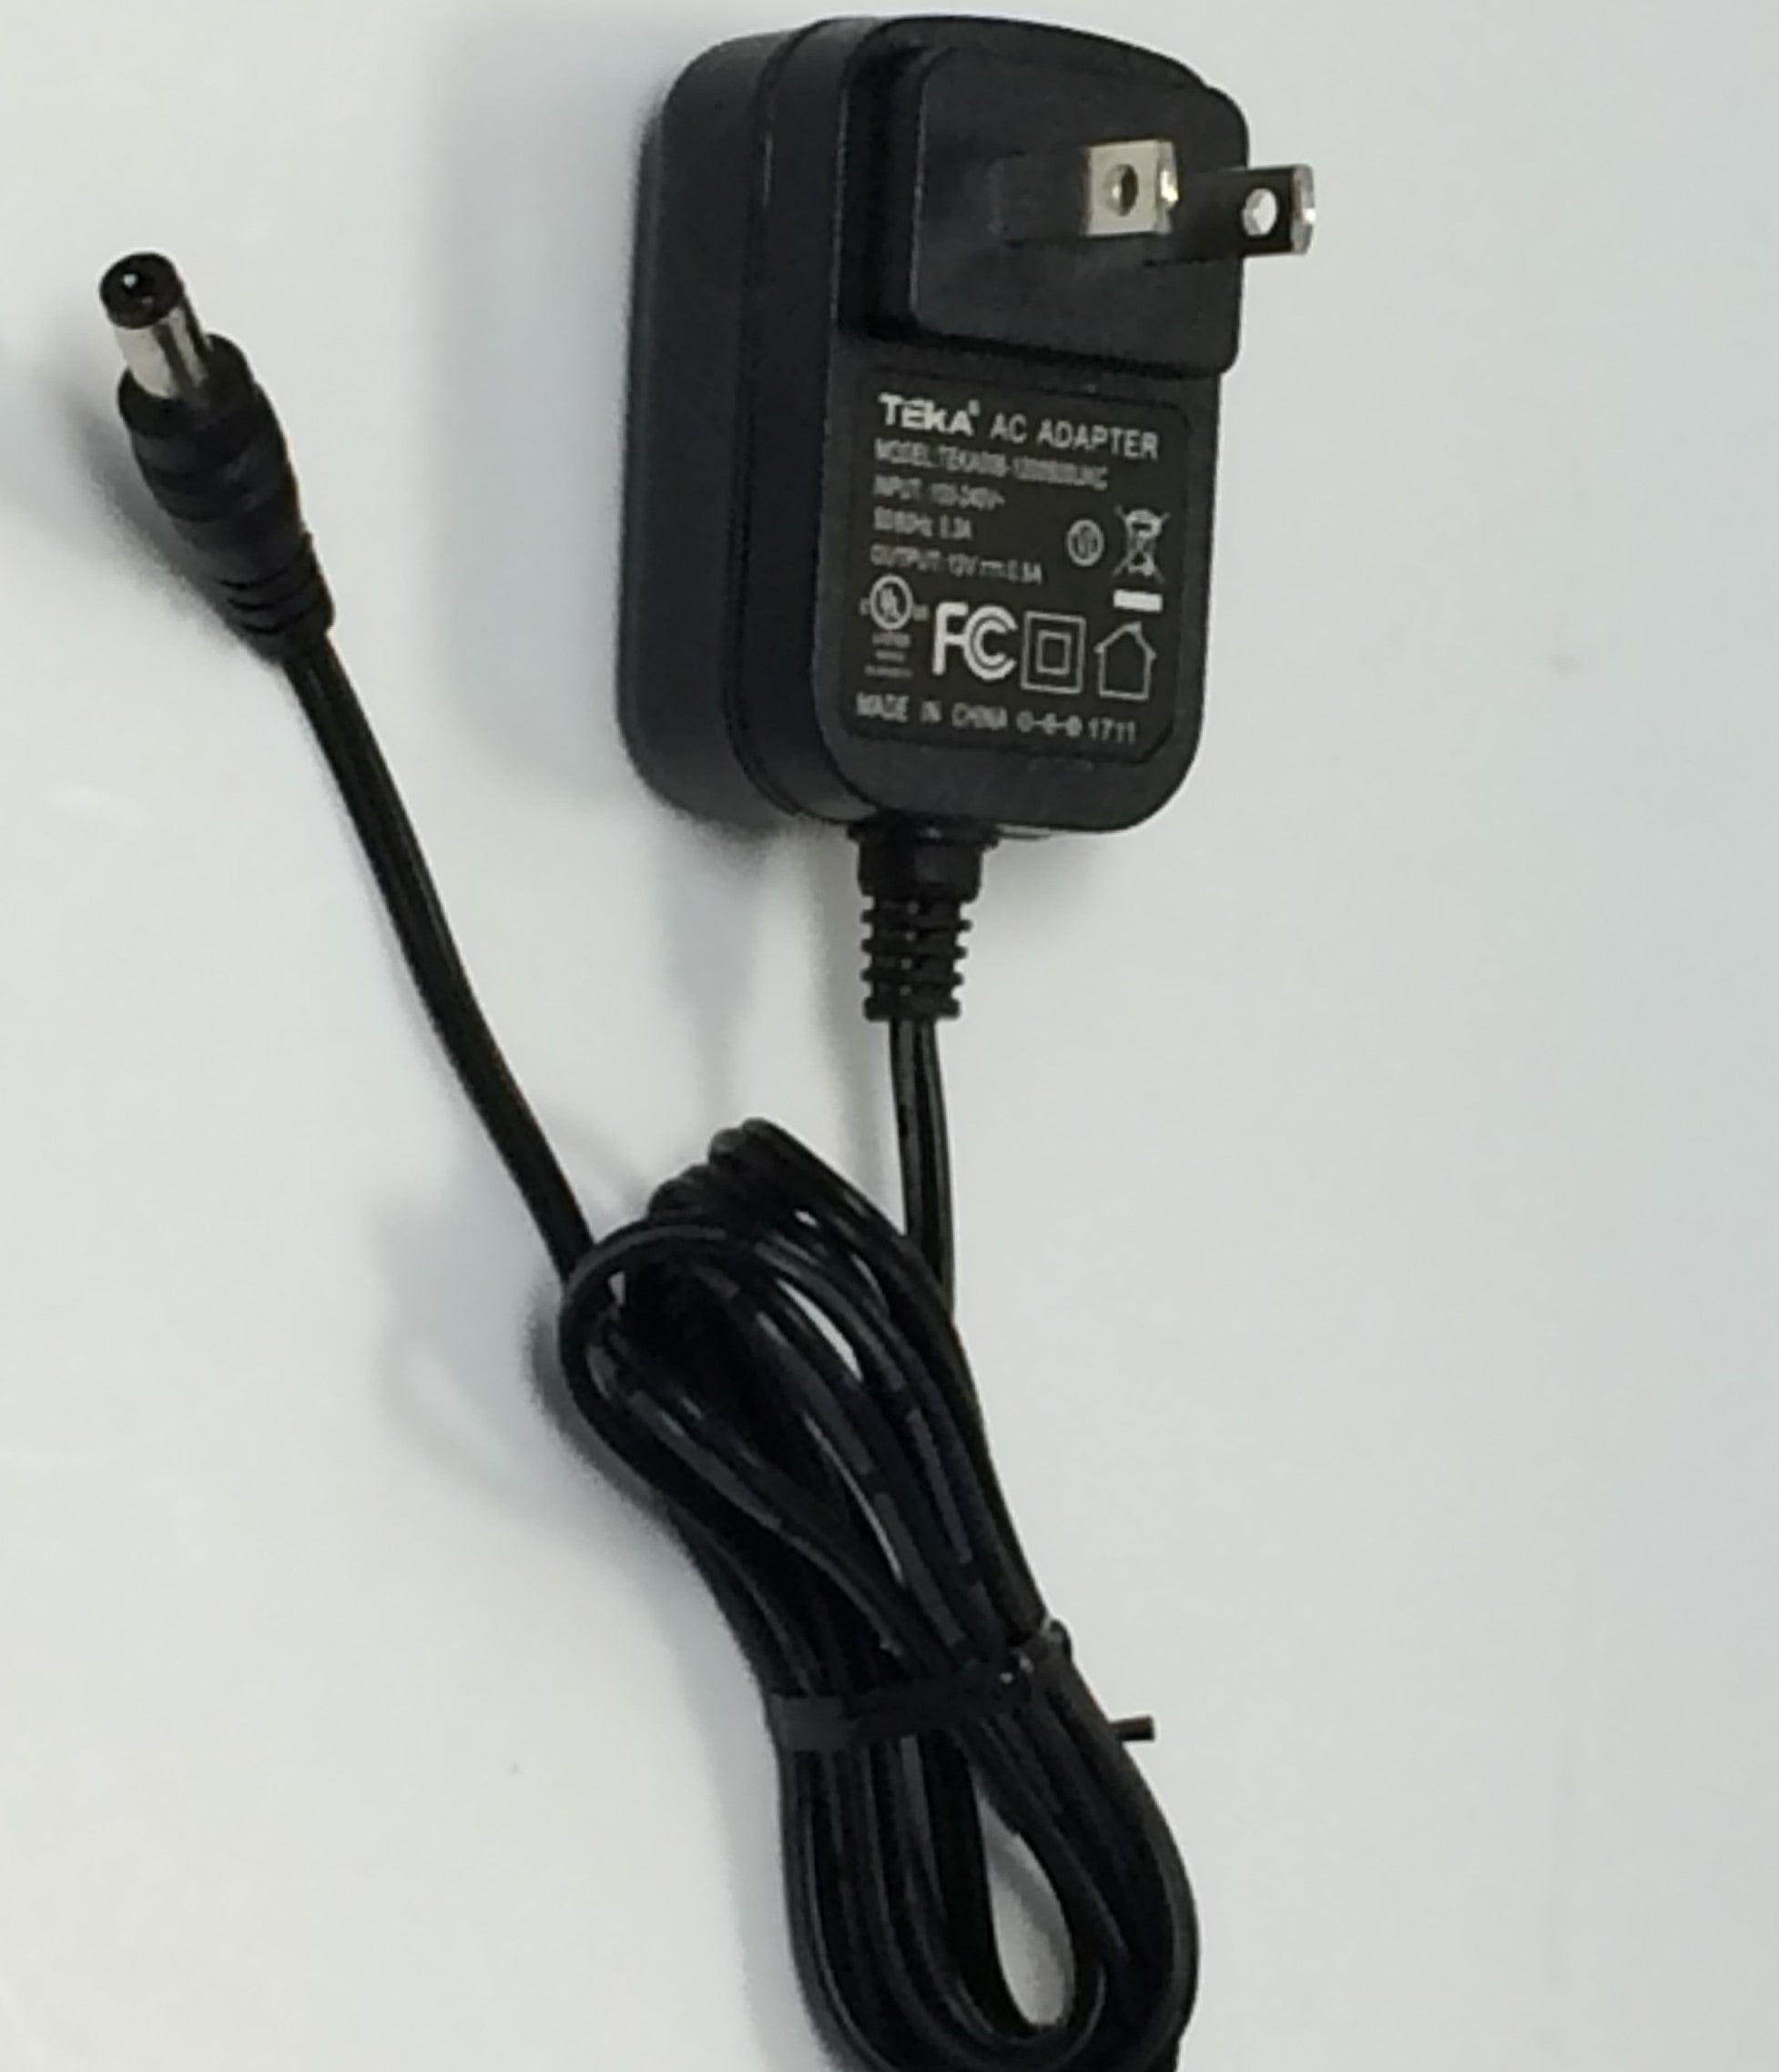 NEW, AC Adapter for Model TEKA006-1200500UKC (5 Ft )